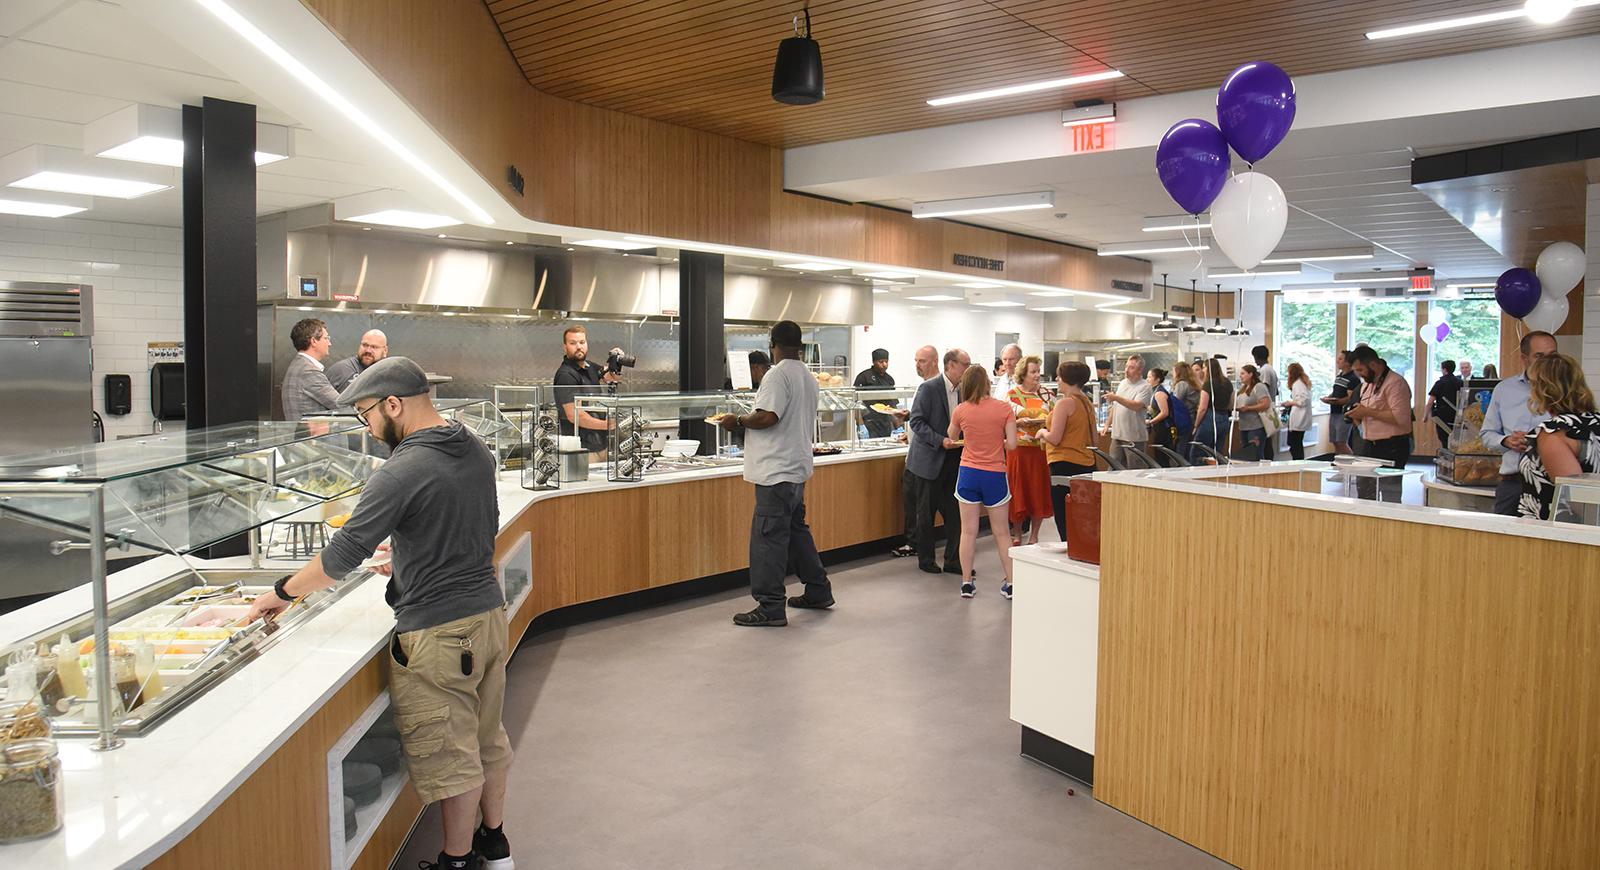 开放日，人们在安德森食堂里自己上菜的照片, 旁边有一些紫色的气球